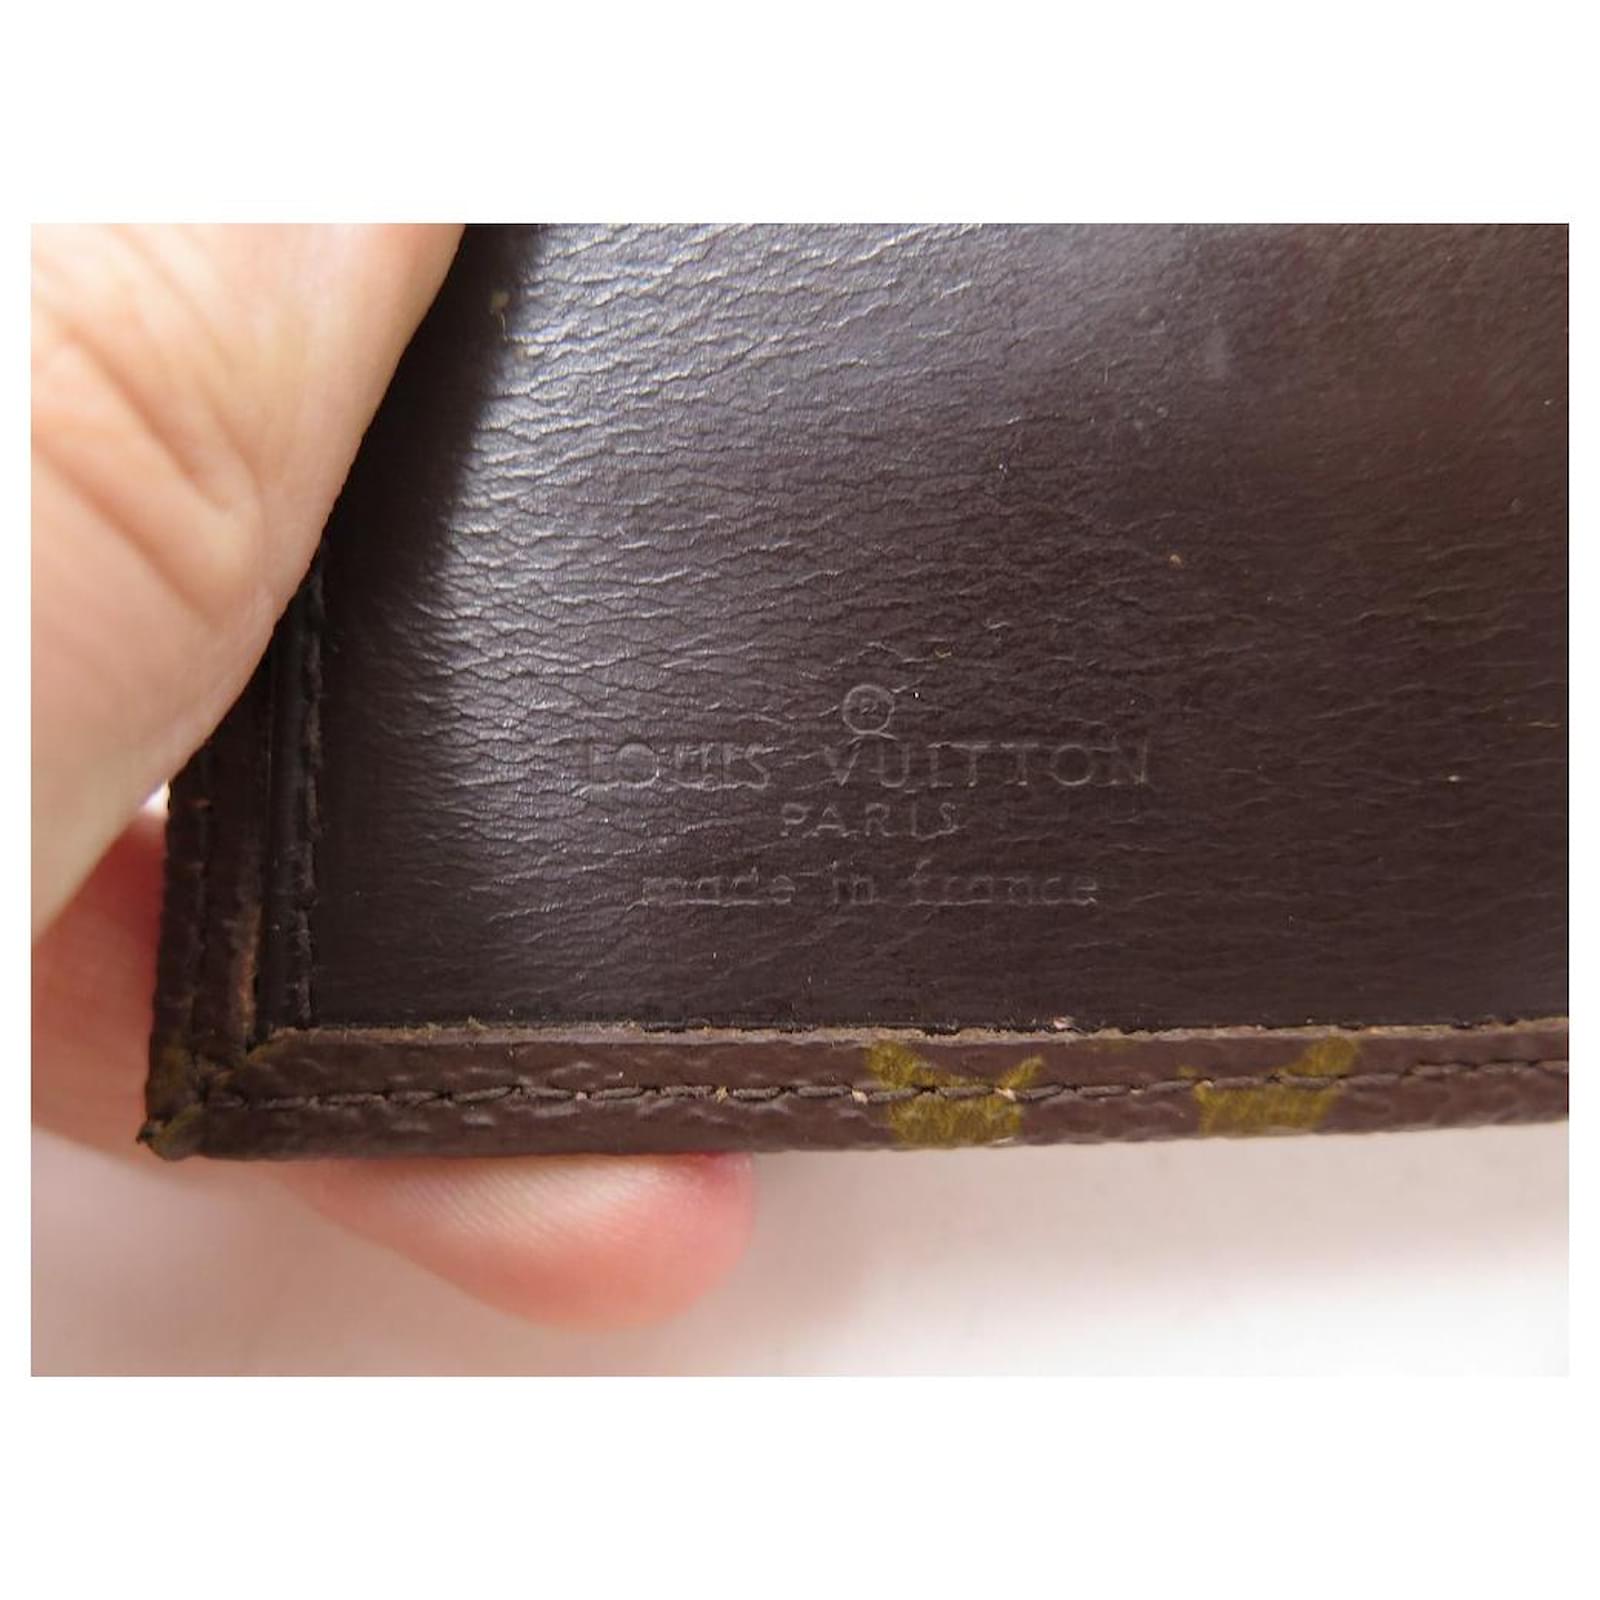 Louis Vuitton Vintage Leather Money Clip